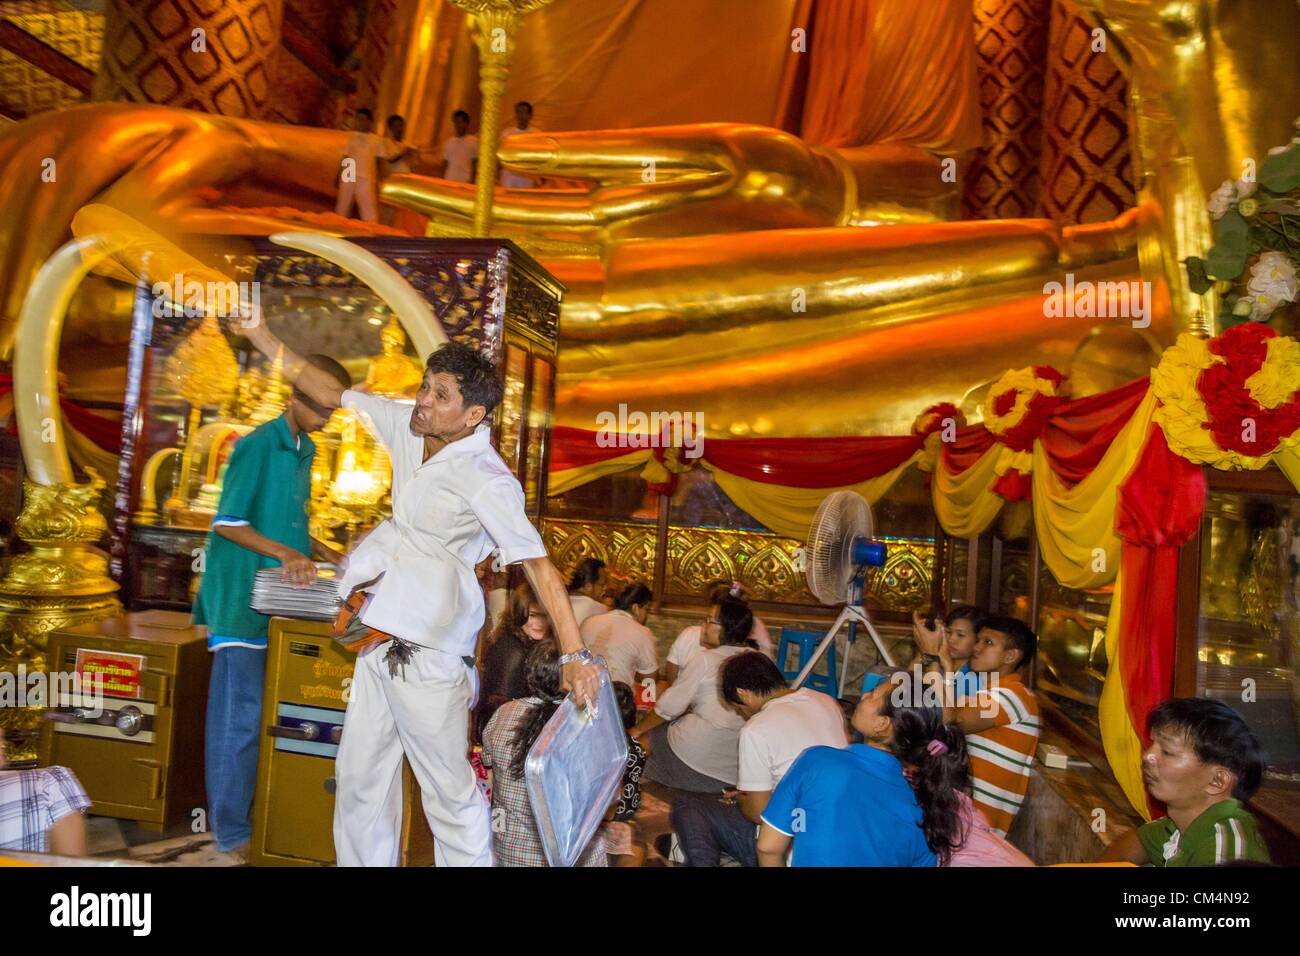 3. Oktober 2012 - Thailand - wirft eine Begleitperson eine Safranrobe verwendet, während ein Verdienst machen Zeremonie im Wat Phananchoeng in Ayutthaya Buddha bis zu der Statue zu kleiden. Der Tempel ist Heimat der größten vergoldete Buddha-Statue in Thailand. Der Tempel wurde gebaut, bevor die Stadt Ayutthaya gegründet wurde. Ayutthaya ist die ehemalige kaiserliche Hauptstadt der damaligen Siam, heute Thailand. Ayutthaya wurde wurde um 1350 gegründet und der zweite Hauptstadt von Siam nach Sukhothai. Ayutthaya Lage zwischen China, Indien und dem Malaiischen Archipel gemacht Ayutthaya Handelszentrum der das Seengebiet. Von 1700 Ayutthaya w Stockfoto